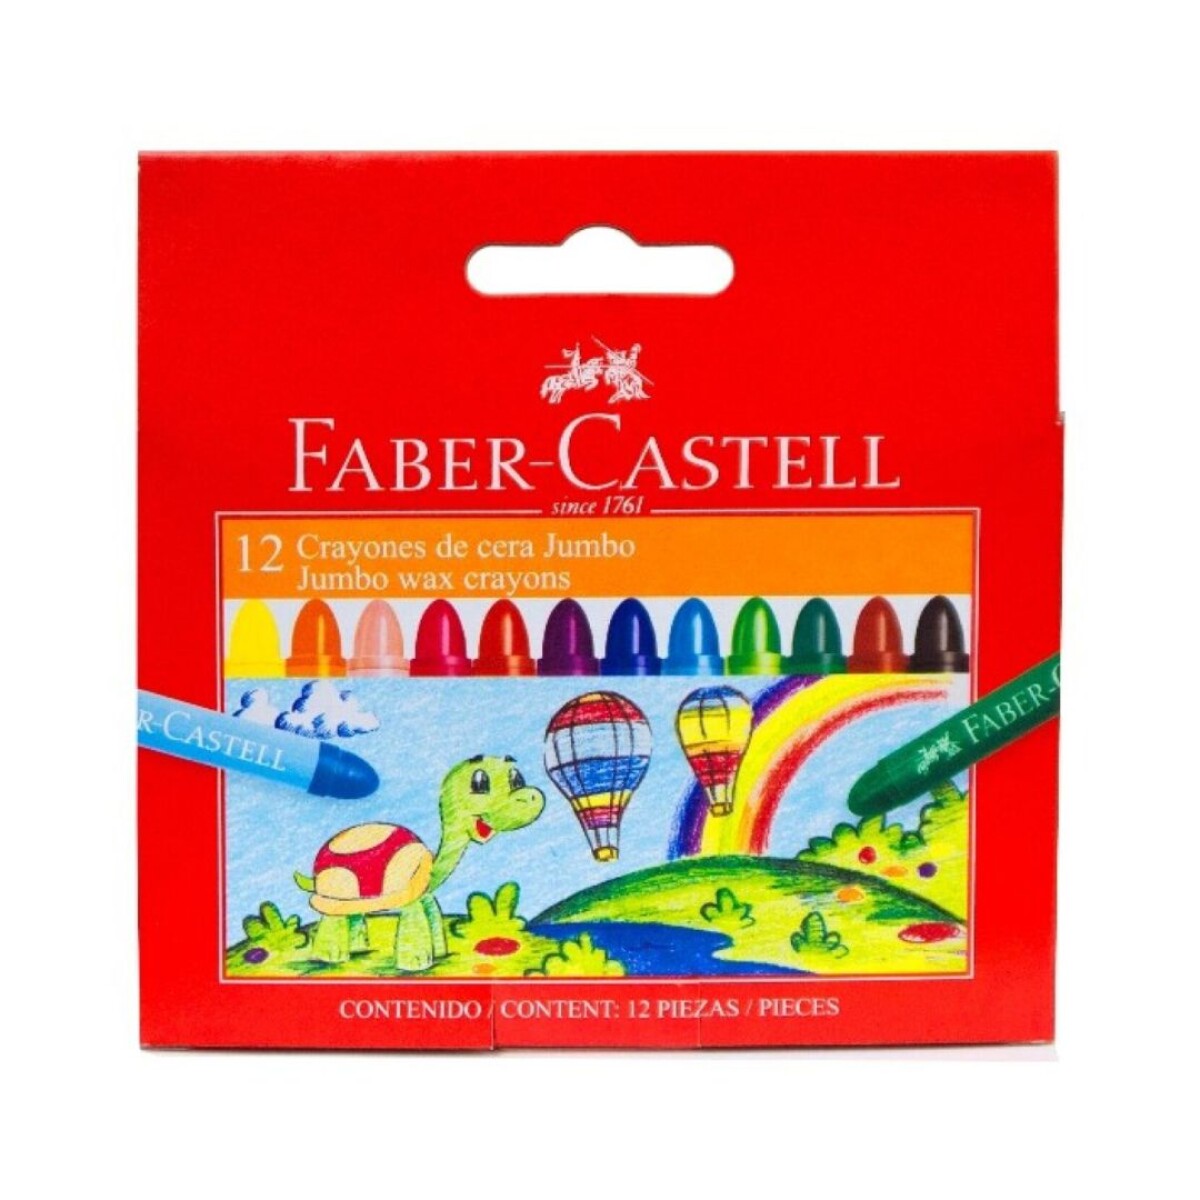 Crayola Faber Castell jumbo 